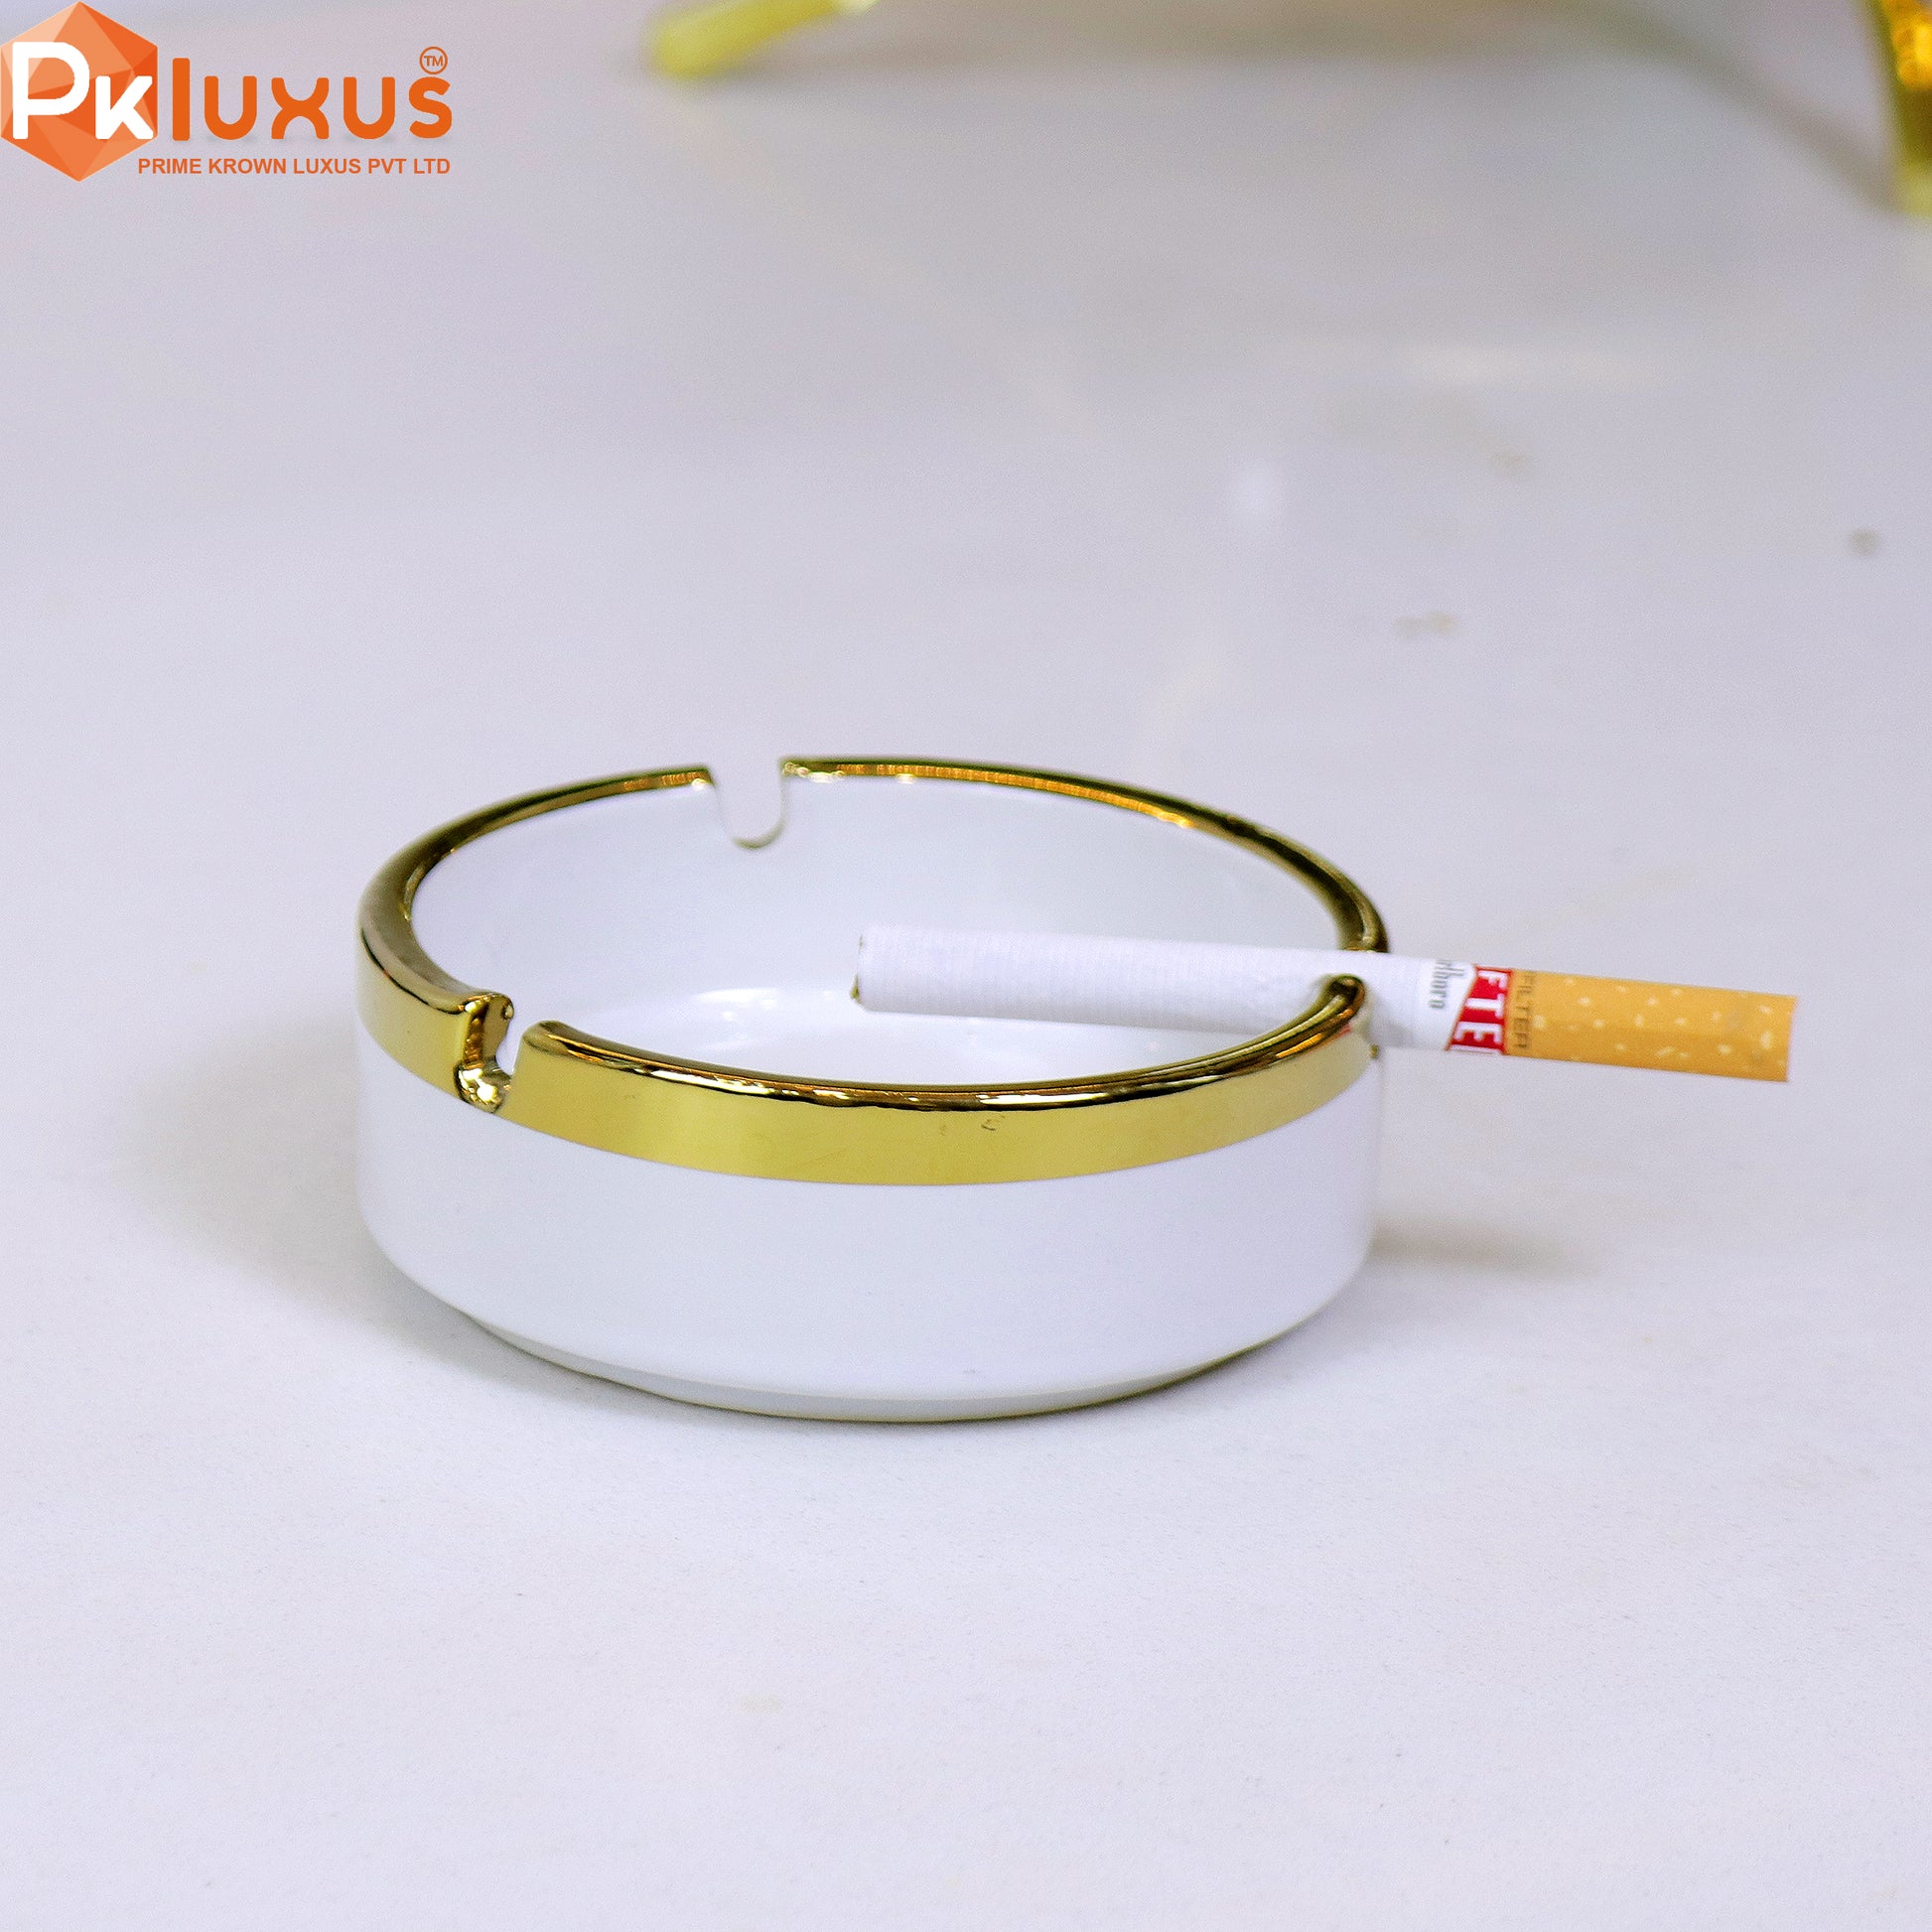 Luxury White & Golden Ashtray By PK LUXUS™ - PK LUXUS